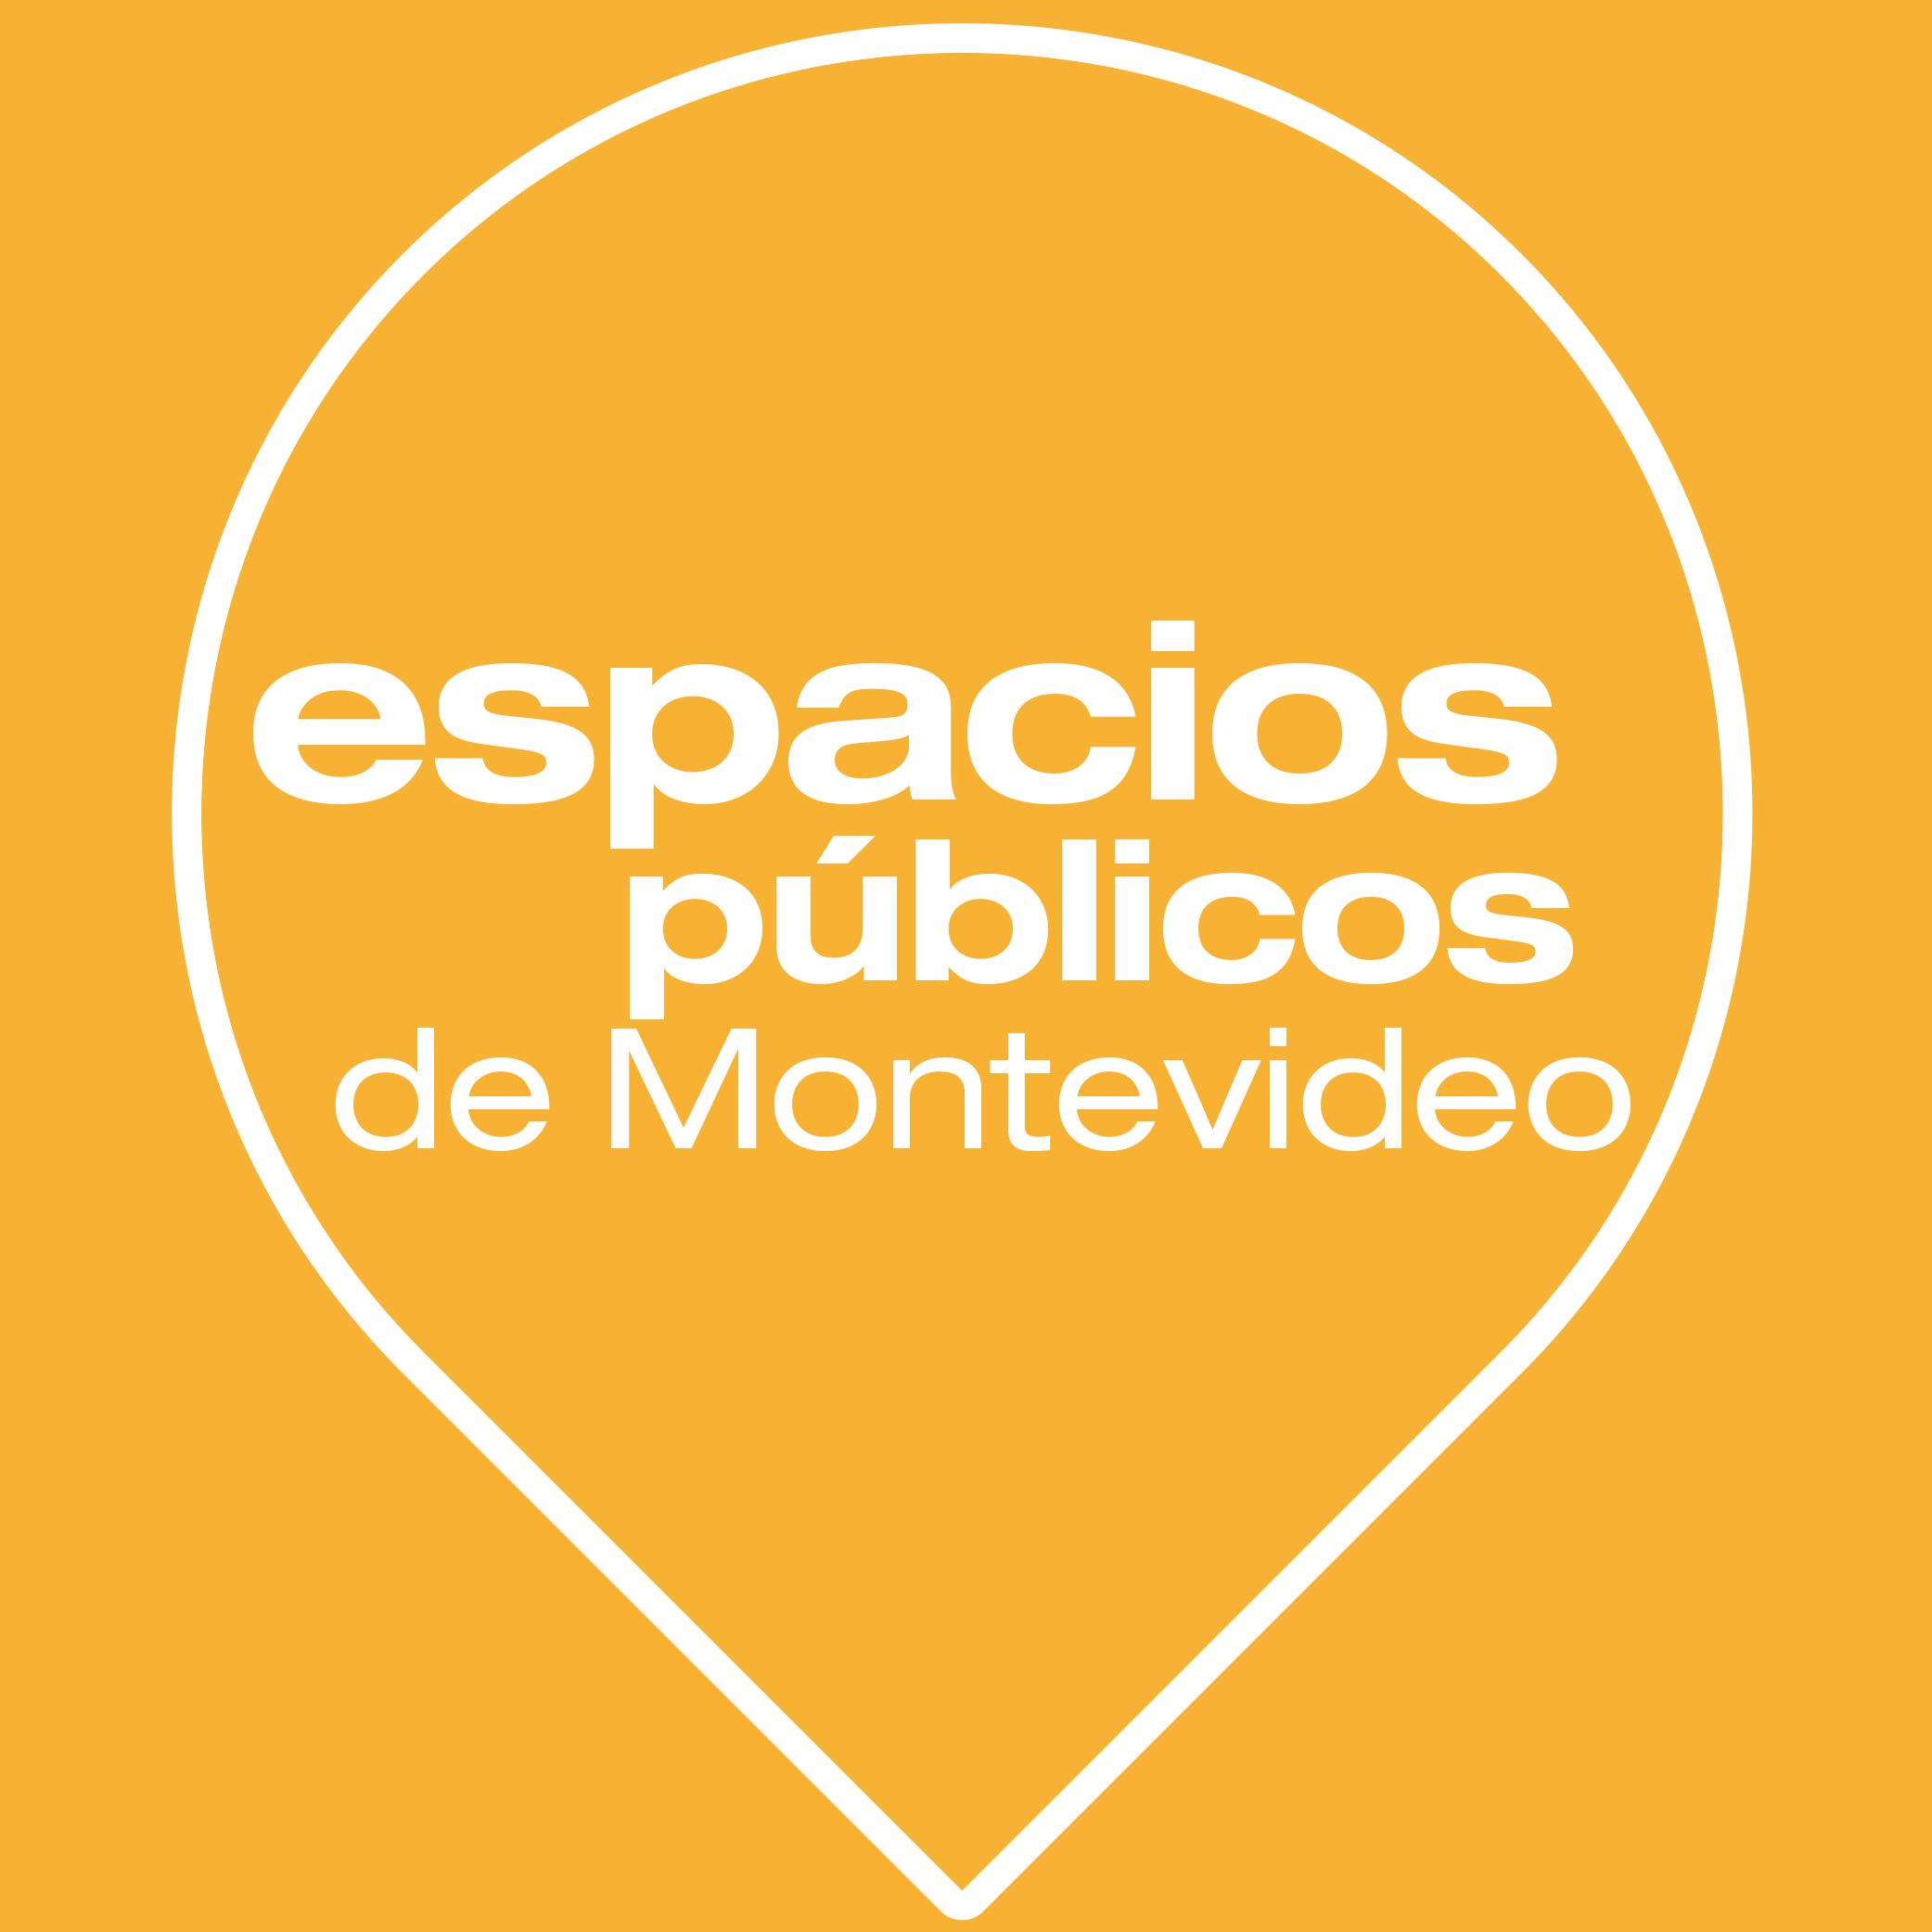 Cuatro jornadas de debate sobre los Espacios Públicos de Montevideo.
convivencia / innovación / cultura ciudadana / patrimonio